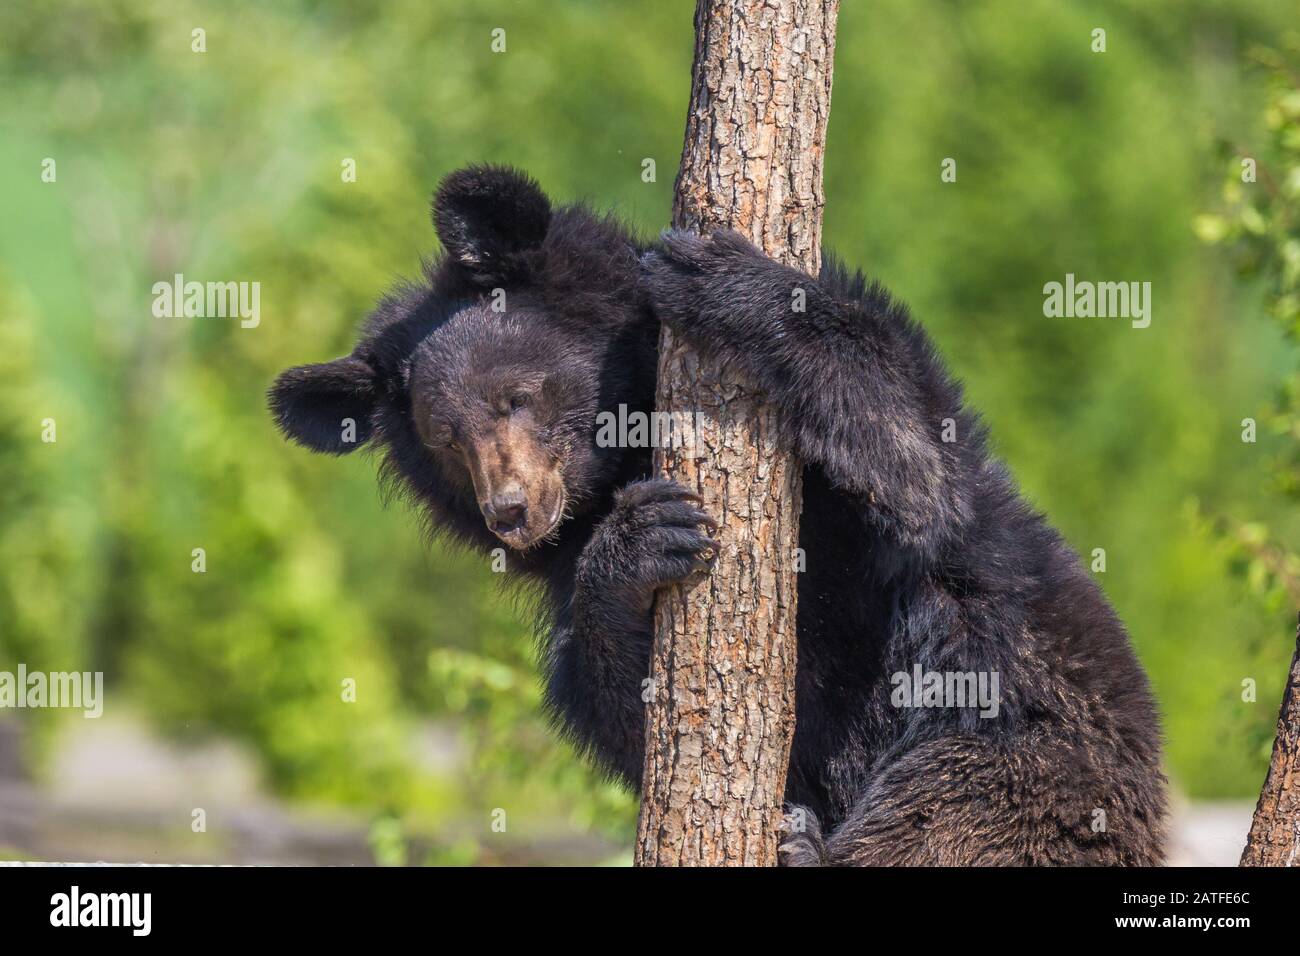 Black Bear climbing a tree on a sunny day Stock Photo